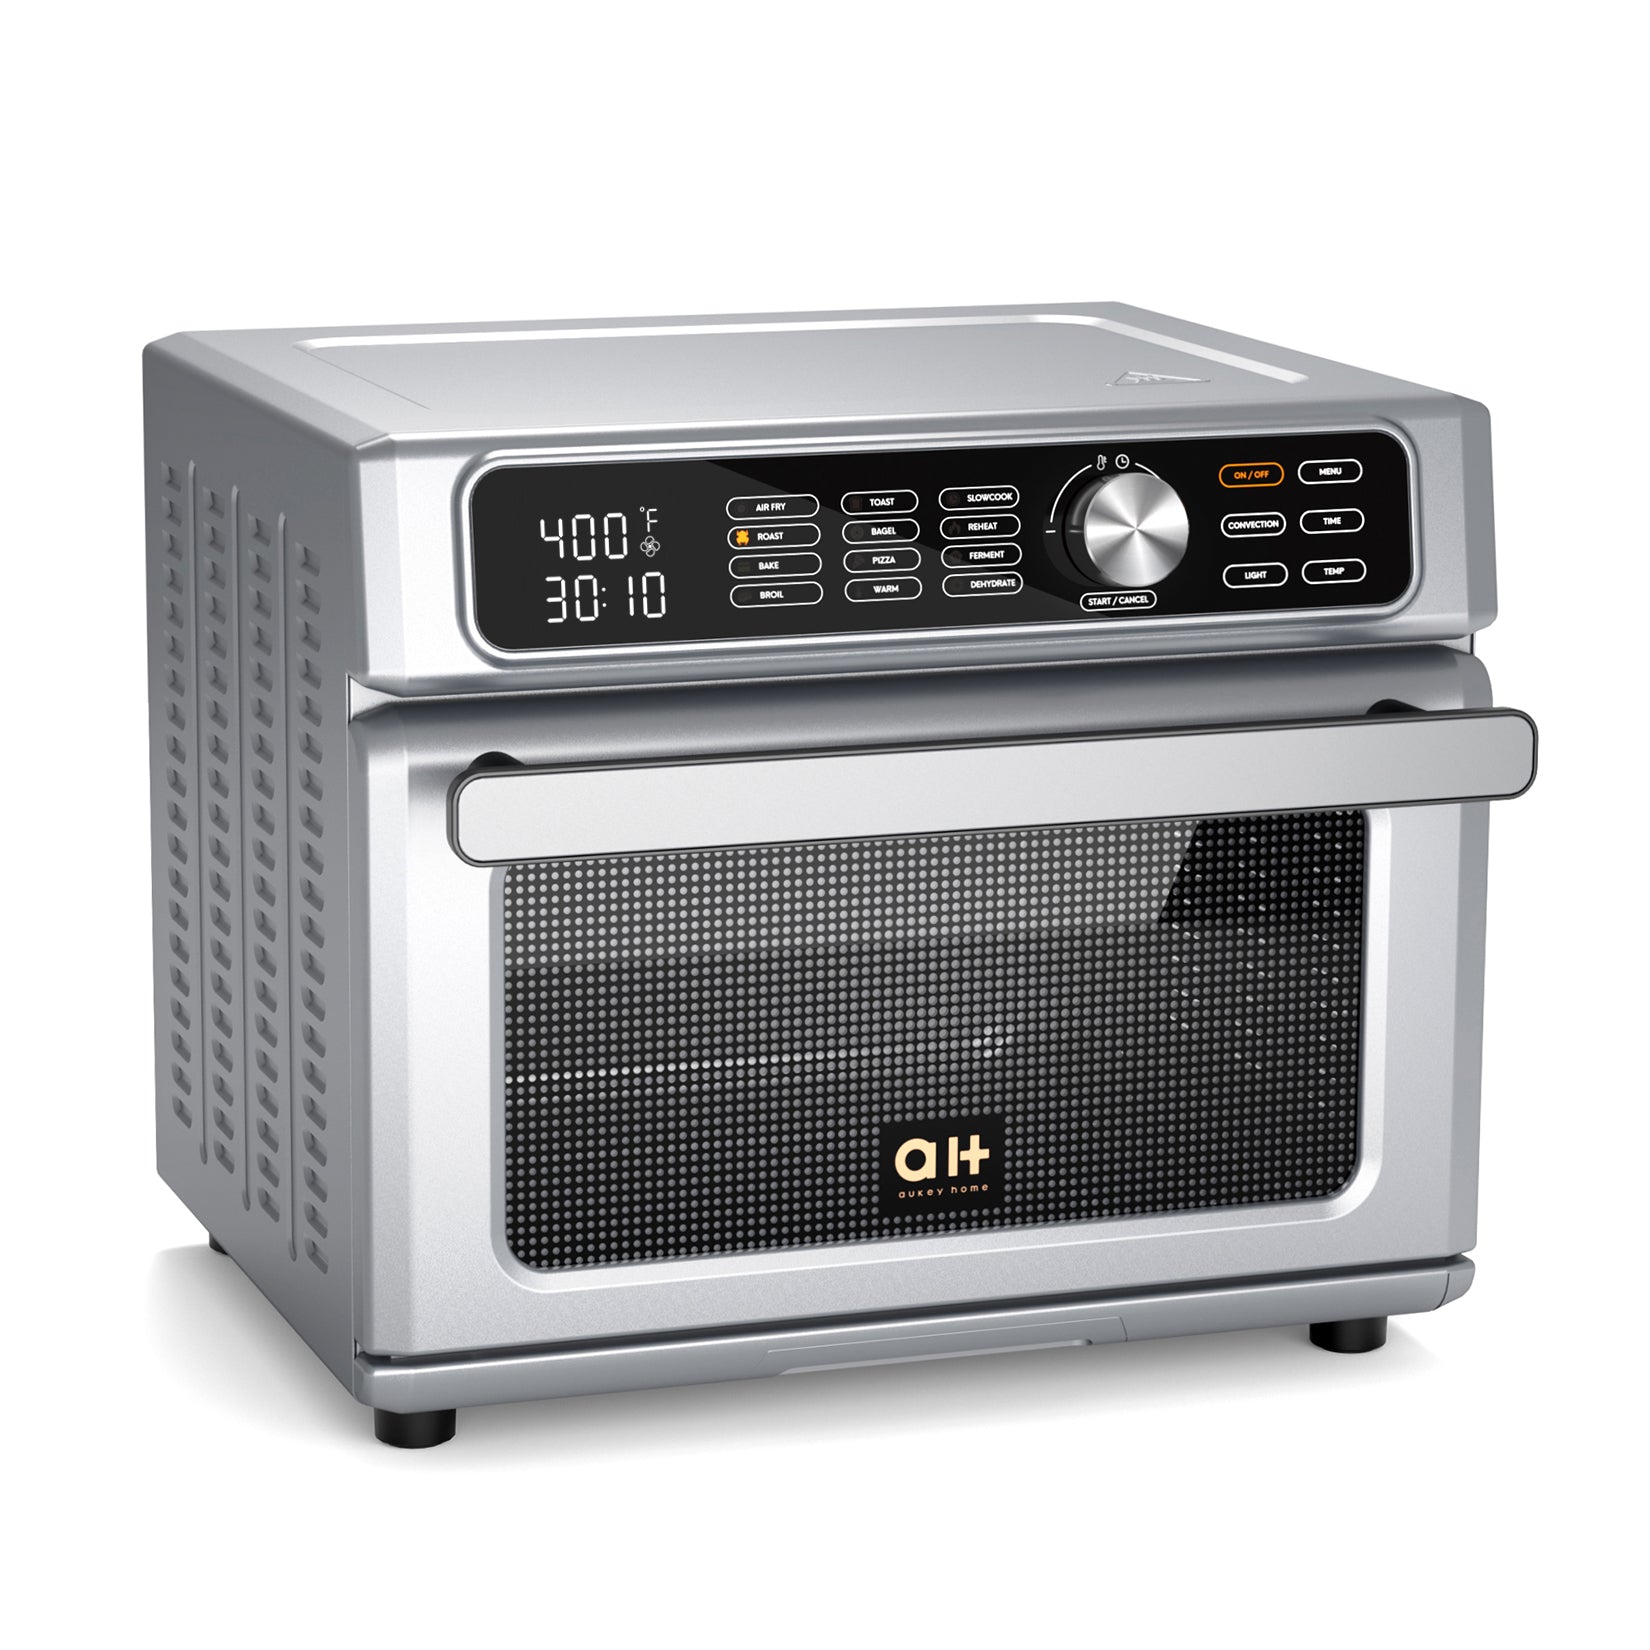 5.8 Quart Digital Air Fryer, Toaster Oven & Cooker, 1700W – Joanna